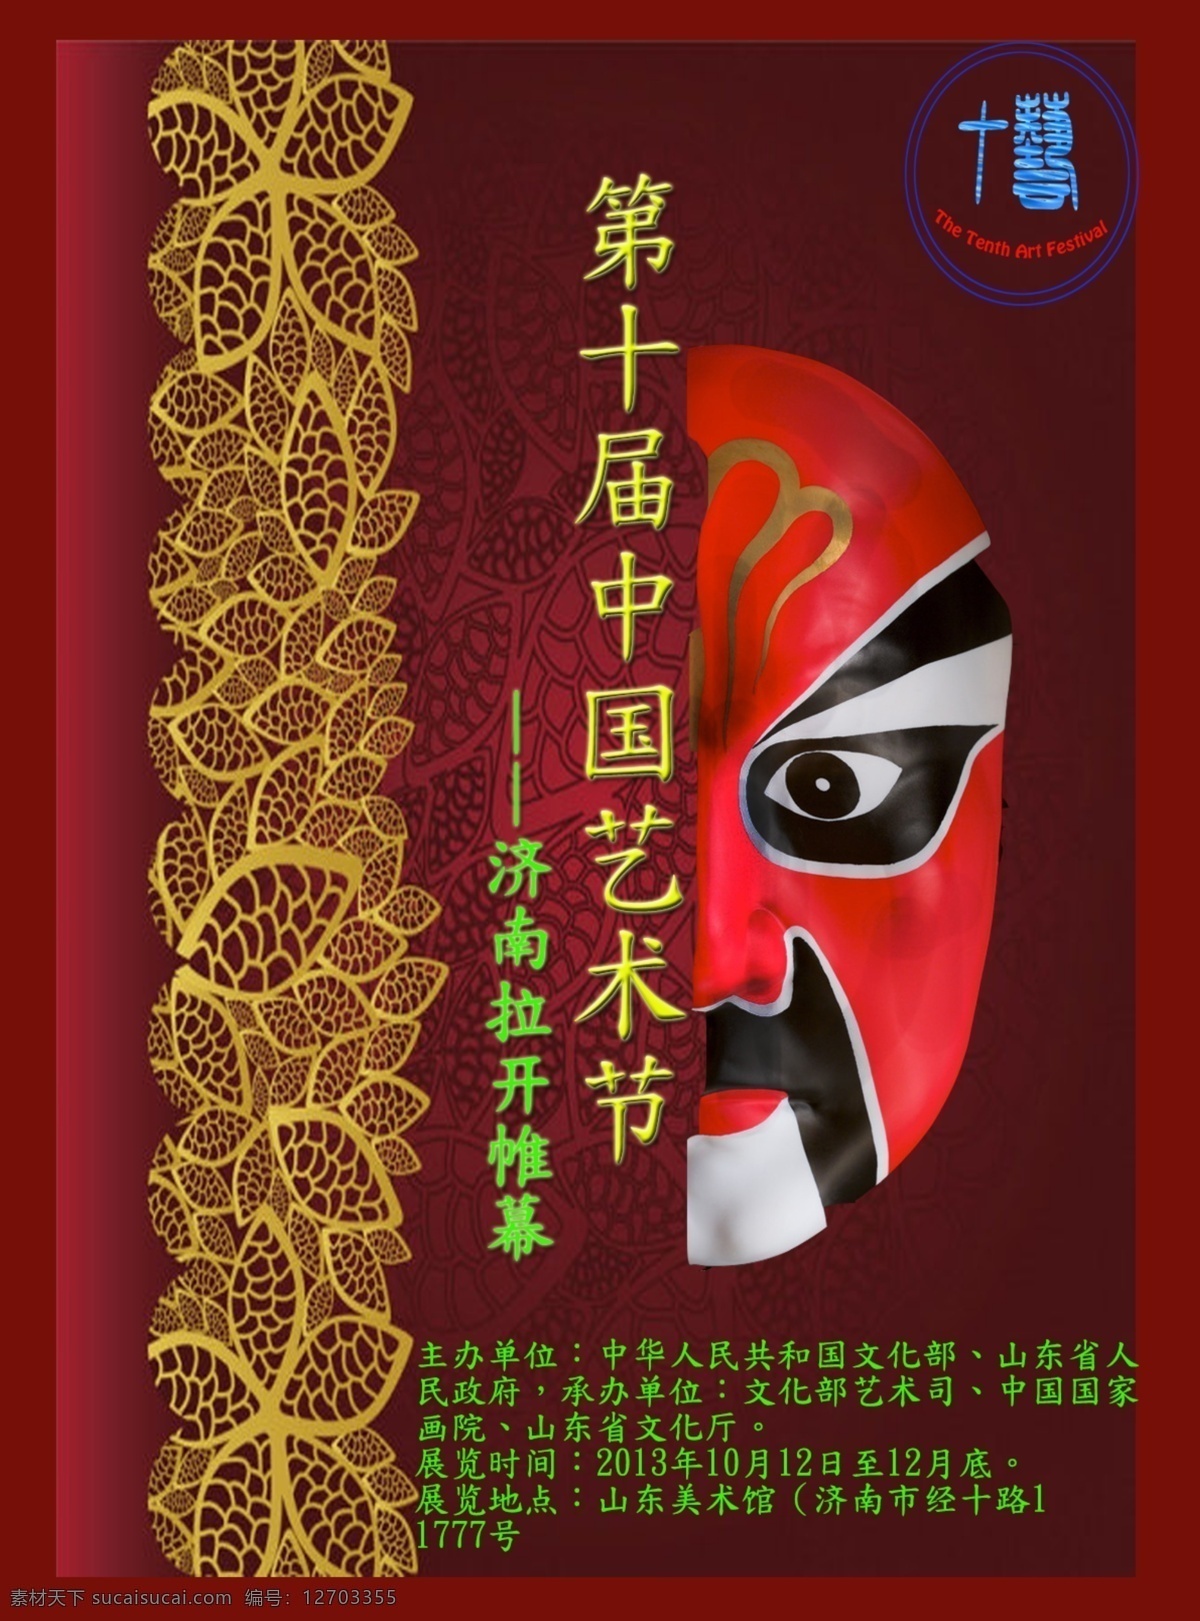 第十届 中国 艺术节 宣传海报 京剧脸谱 中国艺术节 原创设计 原创海报